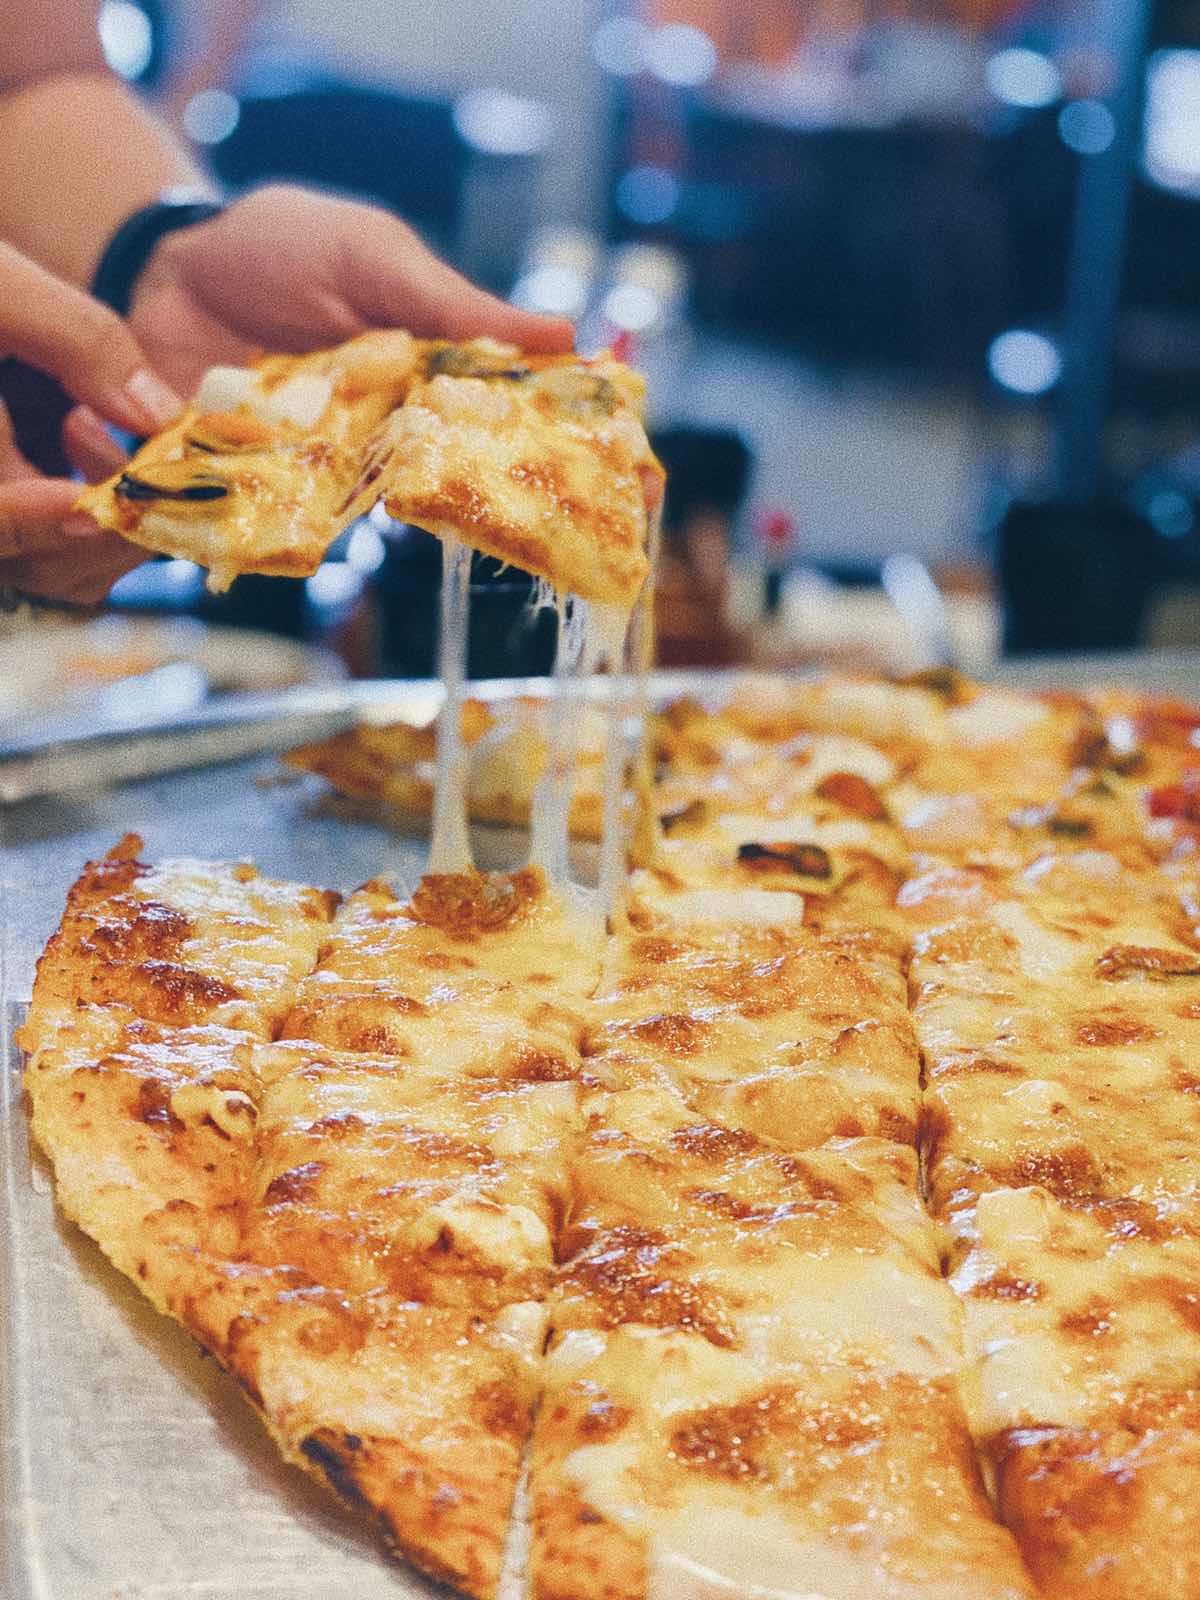 Nhìn lớp phô mai béo ngậy cùng với pizza đế mỏng có được giòn và độ cháy vừa phải như thế này, ai có thể cưỡng lại được nhỉ. Có lẽ bạn sẽ “hấp thụ” thêm nhiều calories trong bữa này đấy. Tuy nhiên, lâu lâu hãy “xã” một chút nhé.